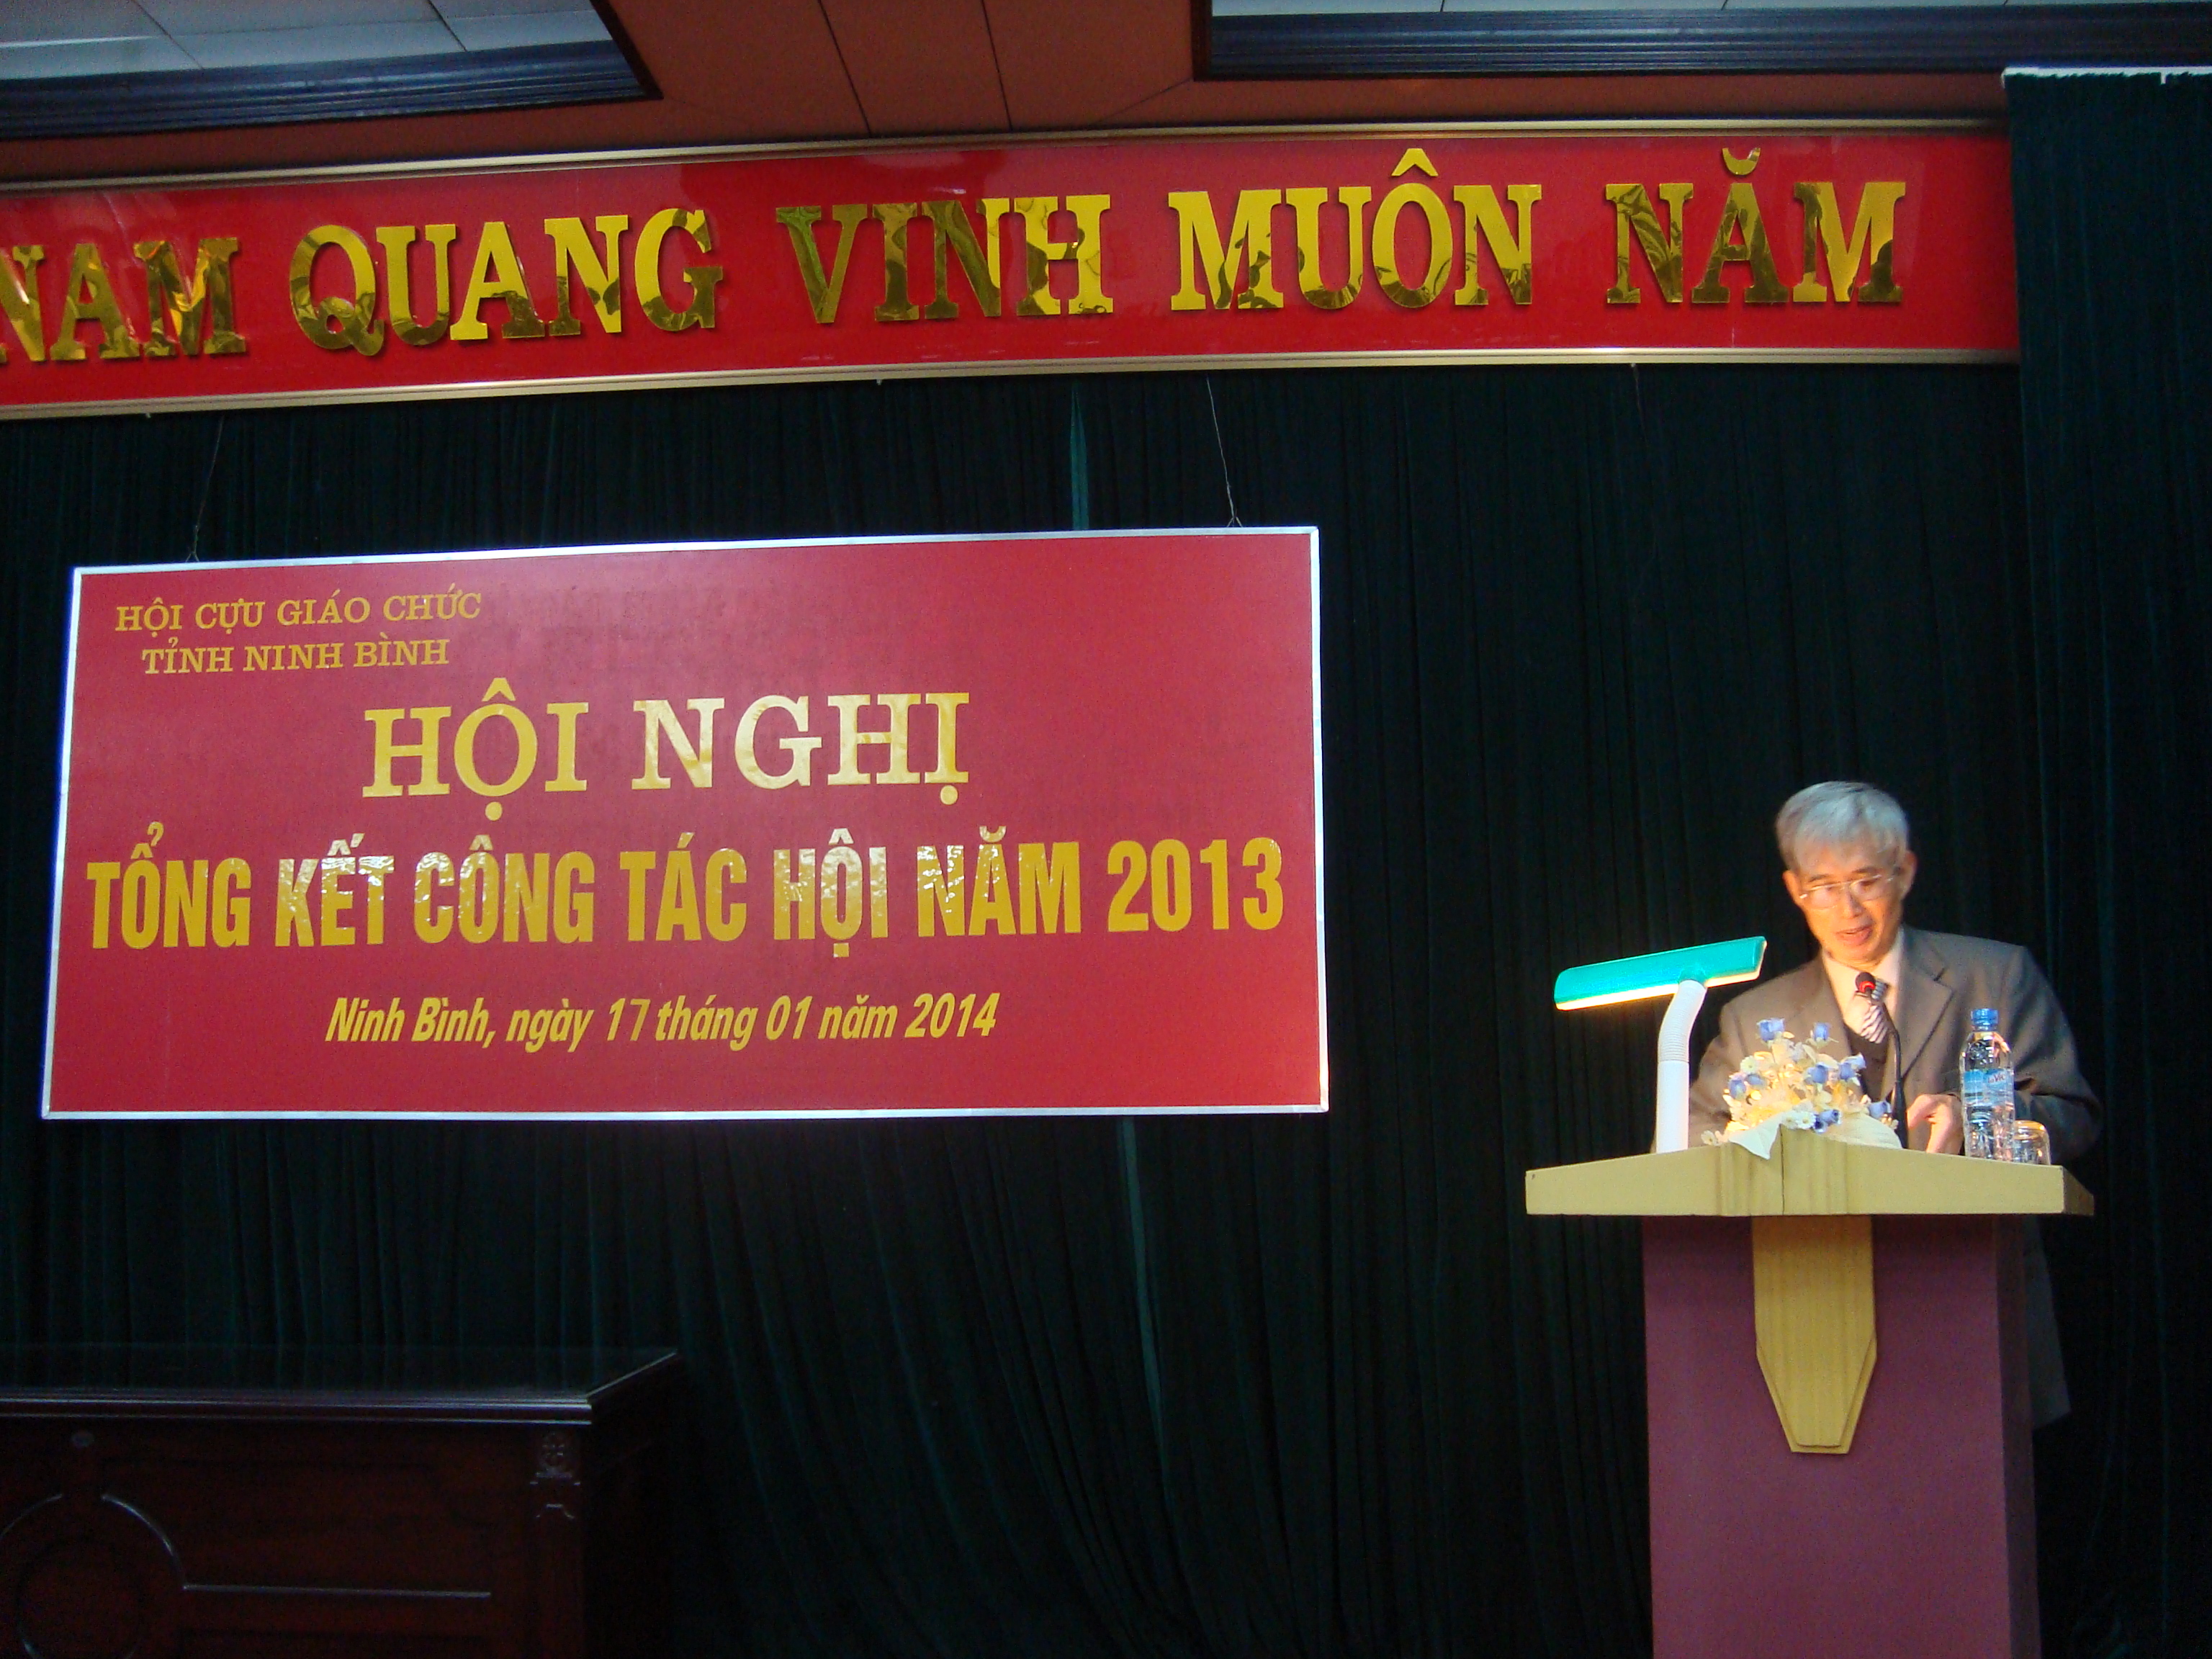 Hội Cựu giáo chức tỉnh Ninh Bình tổ chức Hội nghị  tổng kết công tác Hội năm 2013 và Phương hướng nhiệm vụ năm 2014